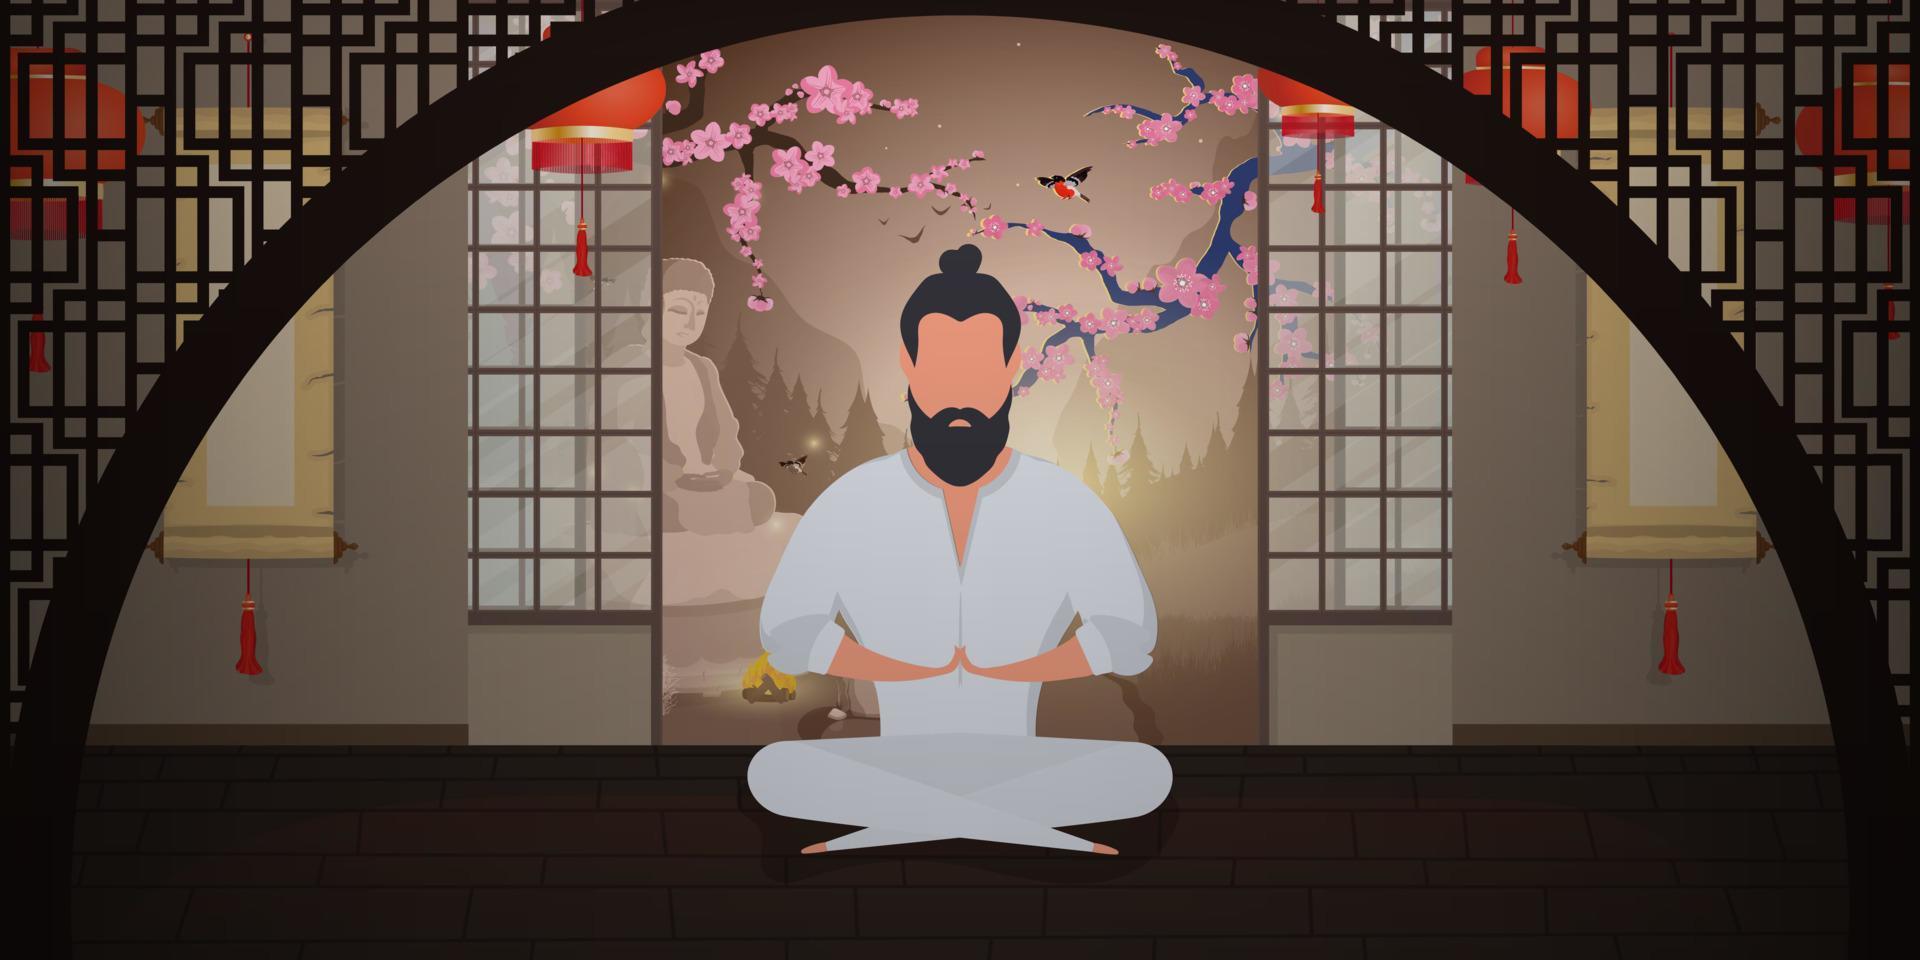 um monge medita em uma sala de estilo japonês. um samurai praticando meditação ou ioga. estilo de desenho animado. ilustração vetorial. vetor